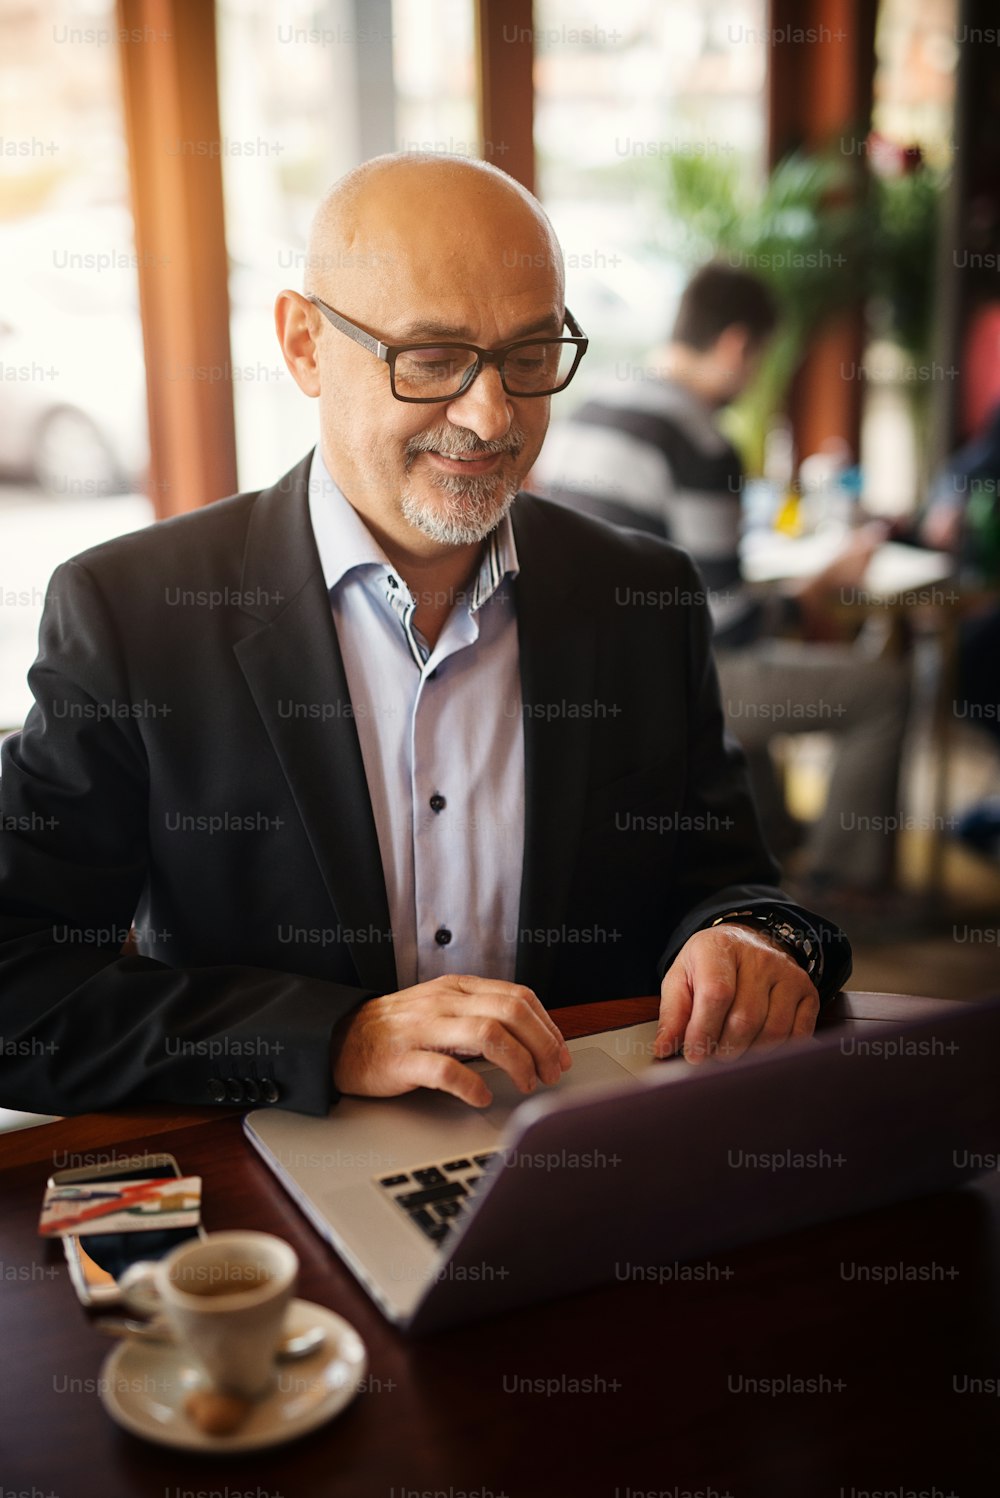 Un homme d’affaires mature et heureux est heureux de ce qu’il voit sur son ordinateur portable alors qu’il est assis dans un café.